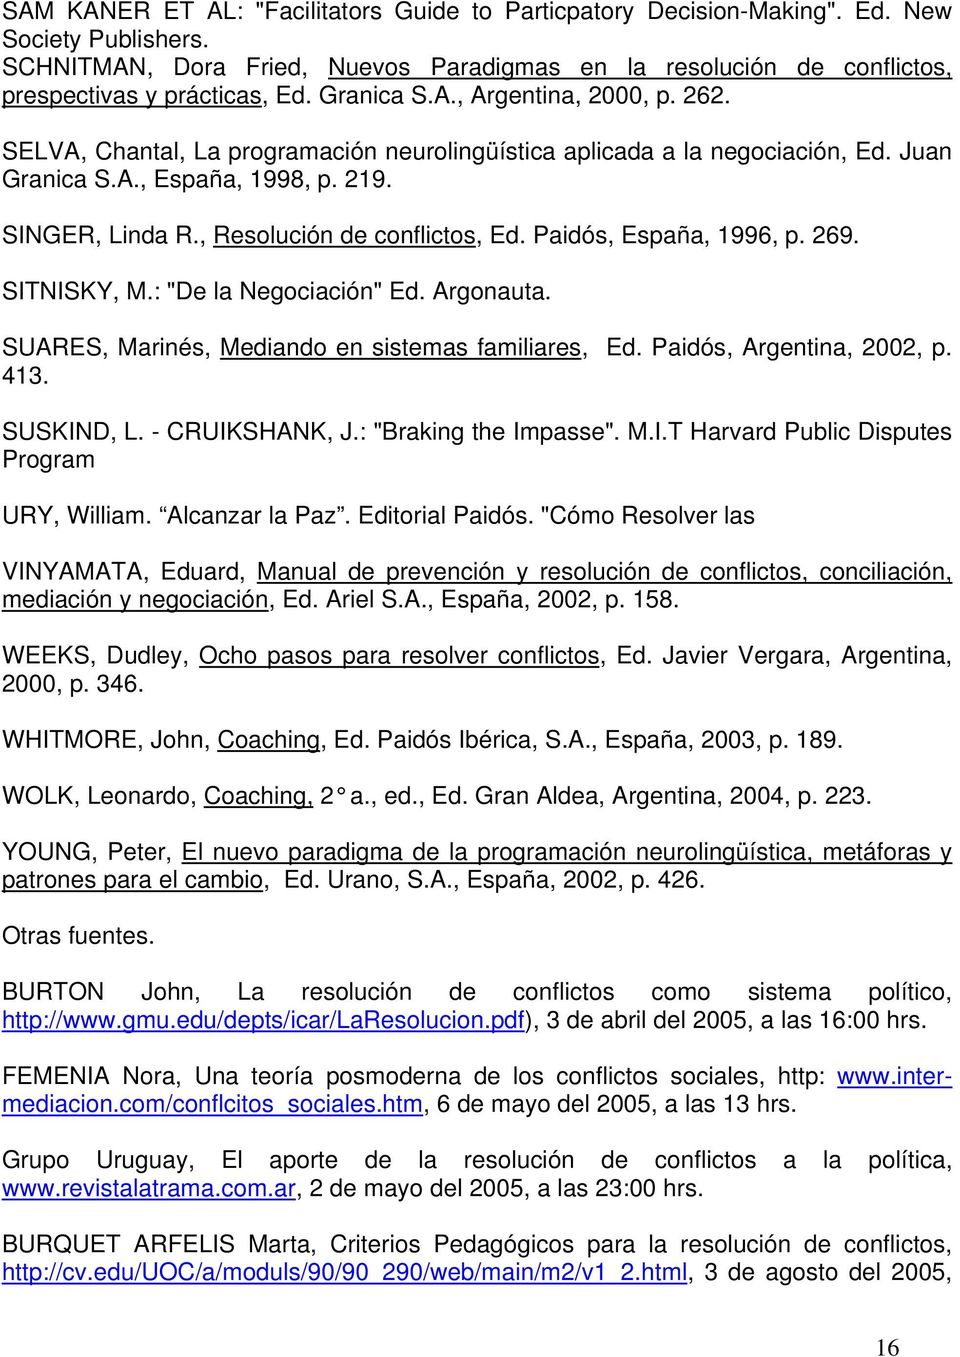 SELVA, Chantal, La programación neurolingüística aplicada a la negociación, Ed. Juan Granica S.A., España, 1998, p. 219. SINGER, Linda R., Resolución de conflictos, Ed. Paidós, España, 1996, p. 269.